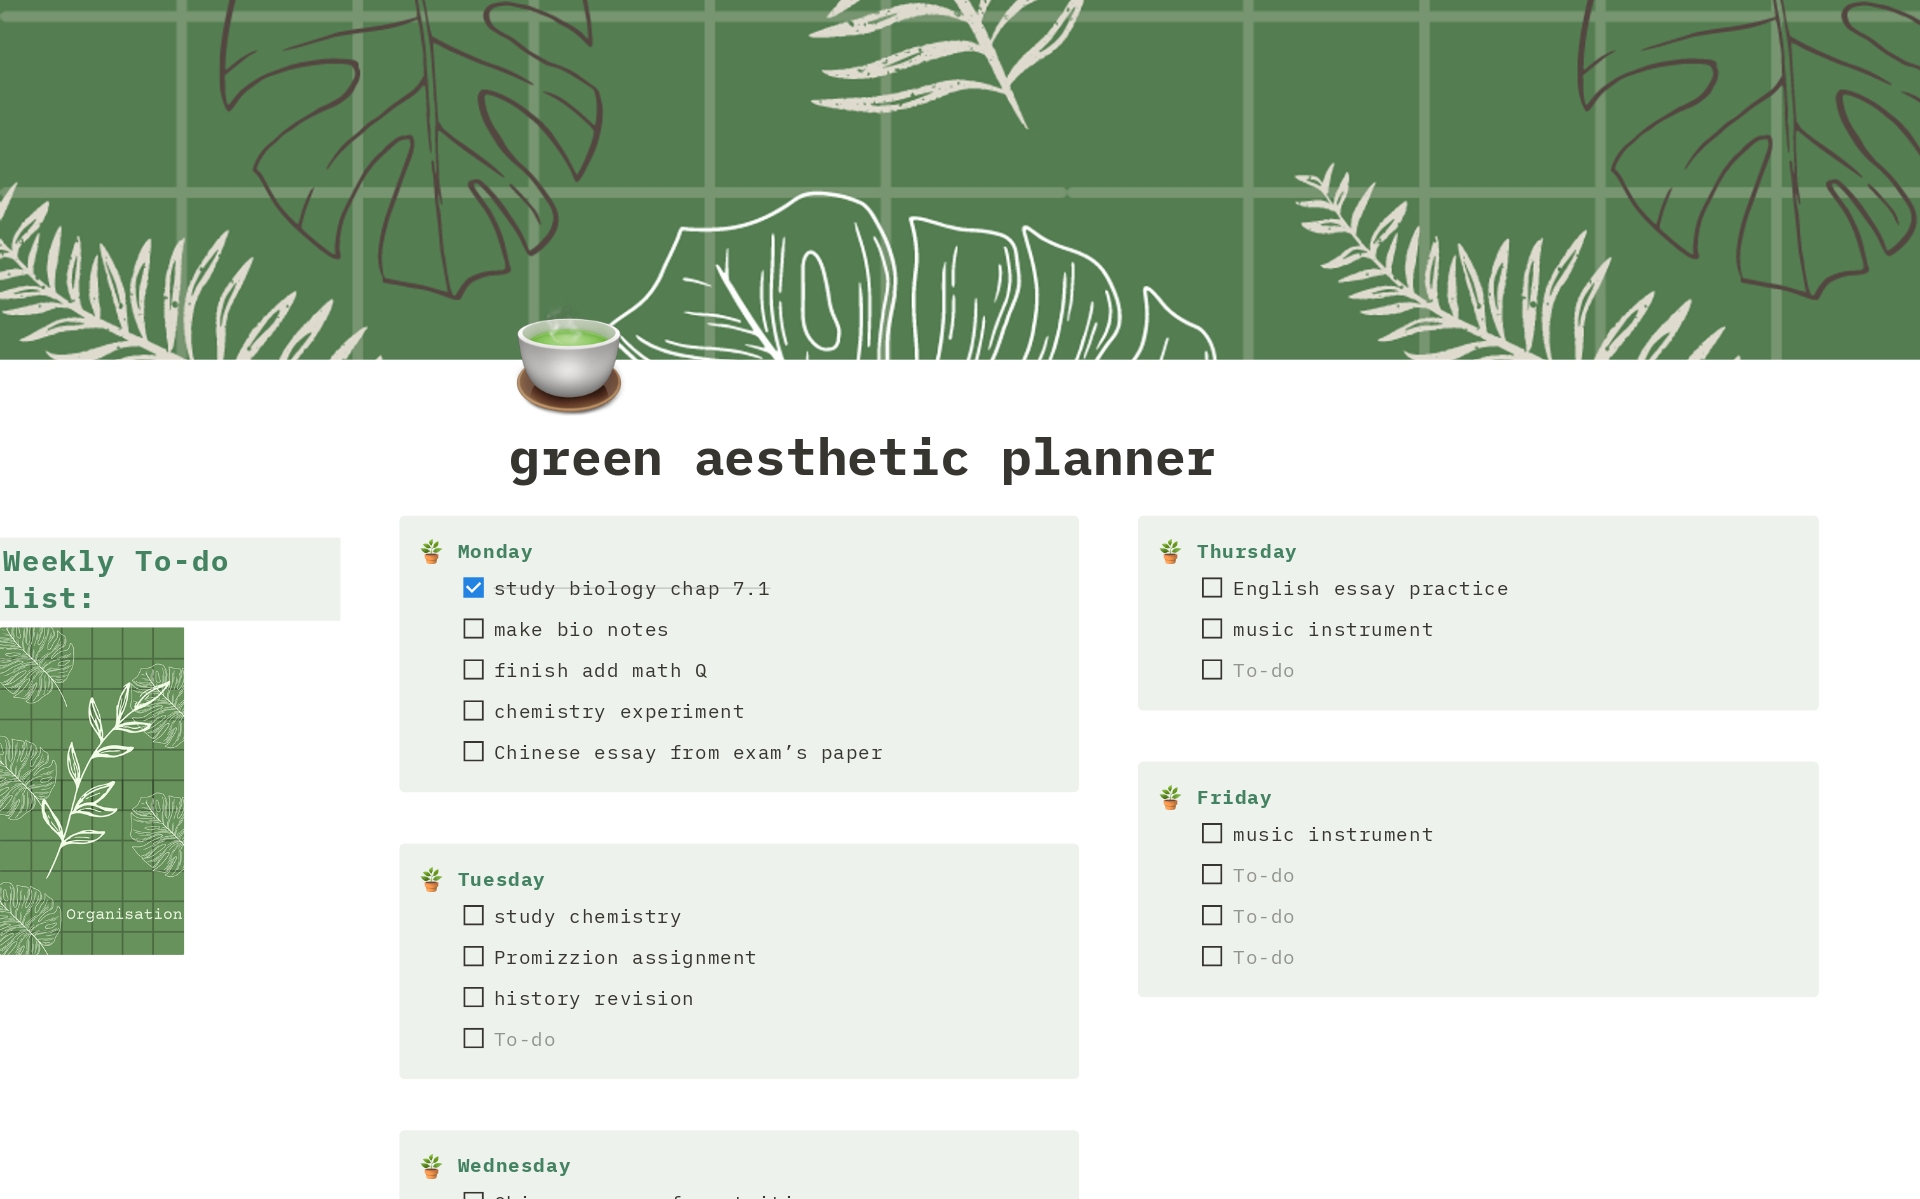 Uma prévia do modelo para green aesthetic planner